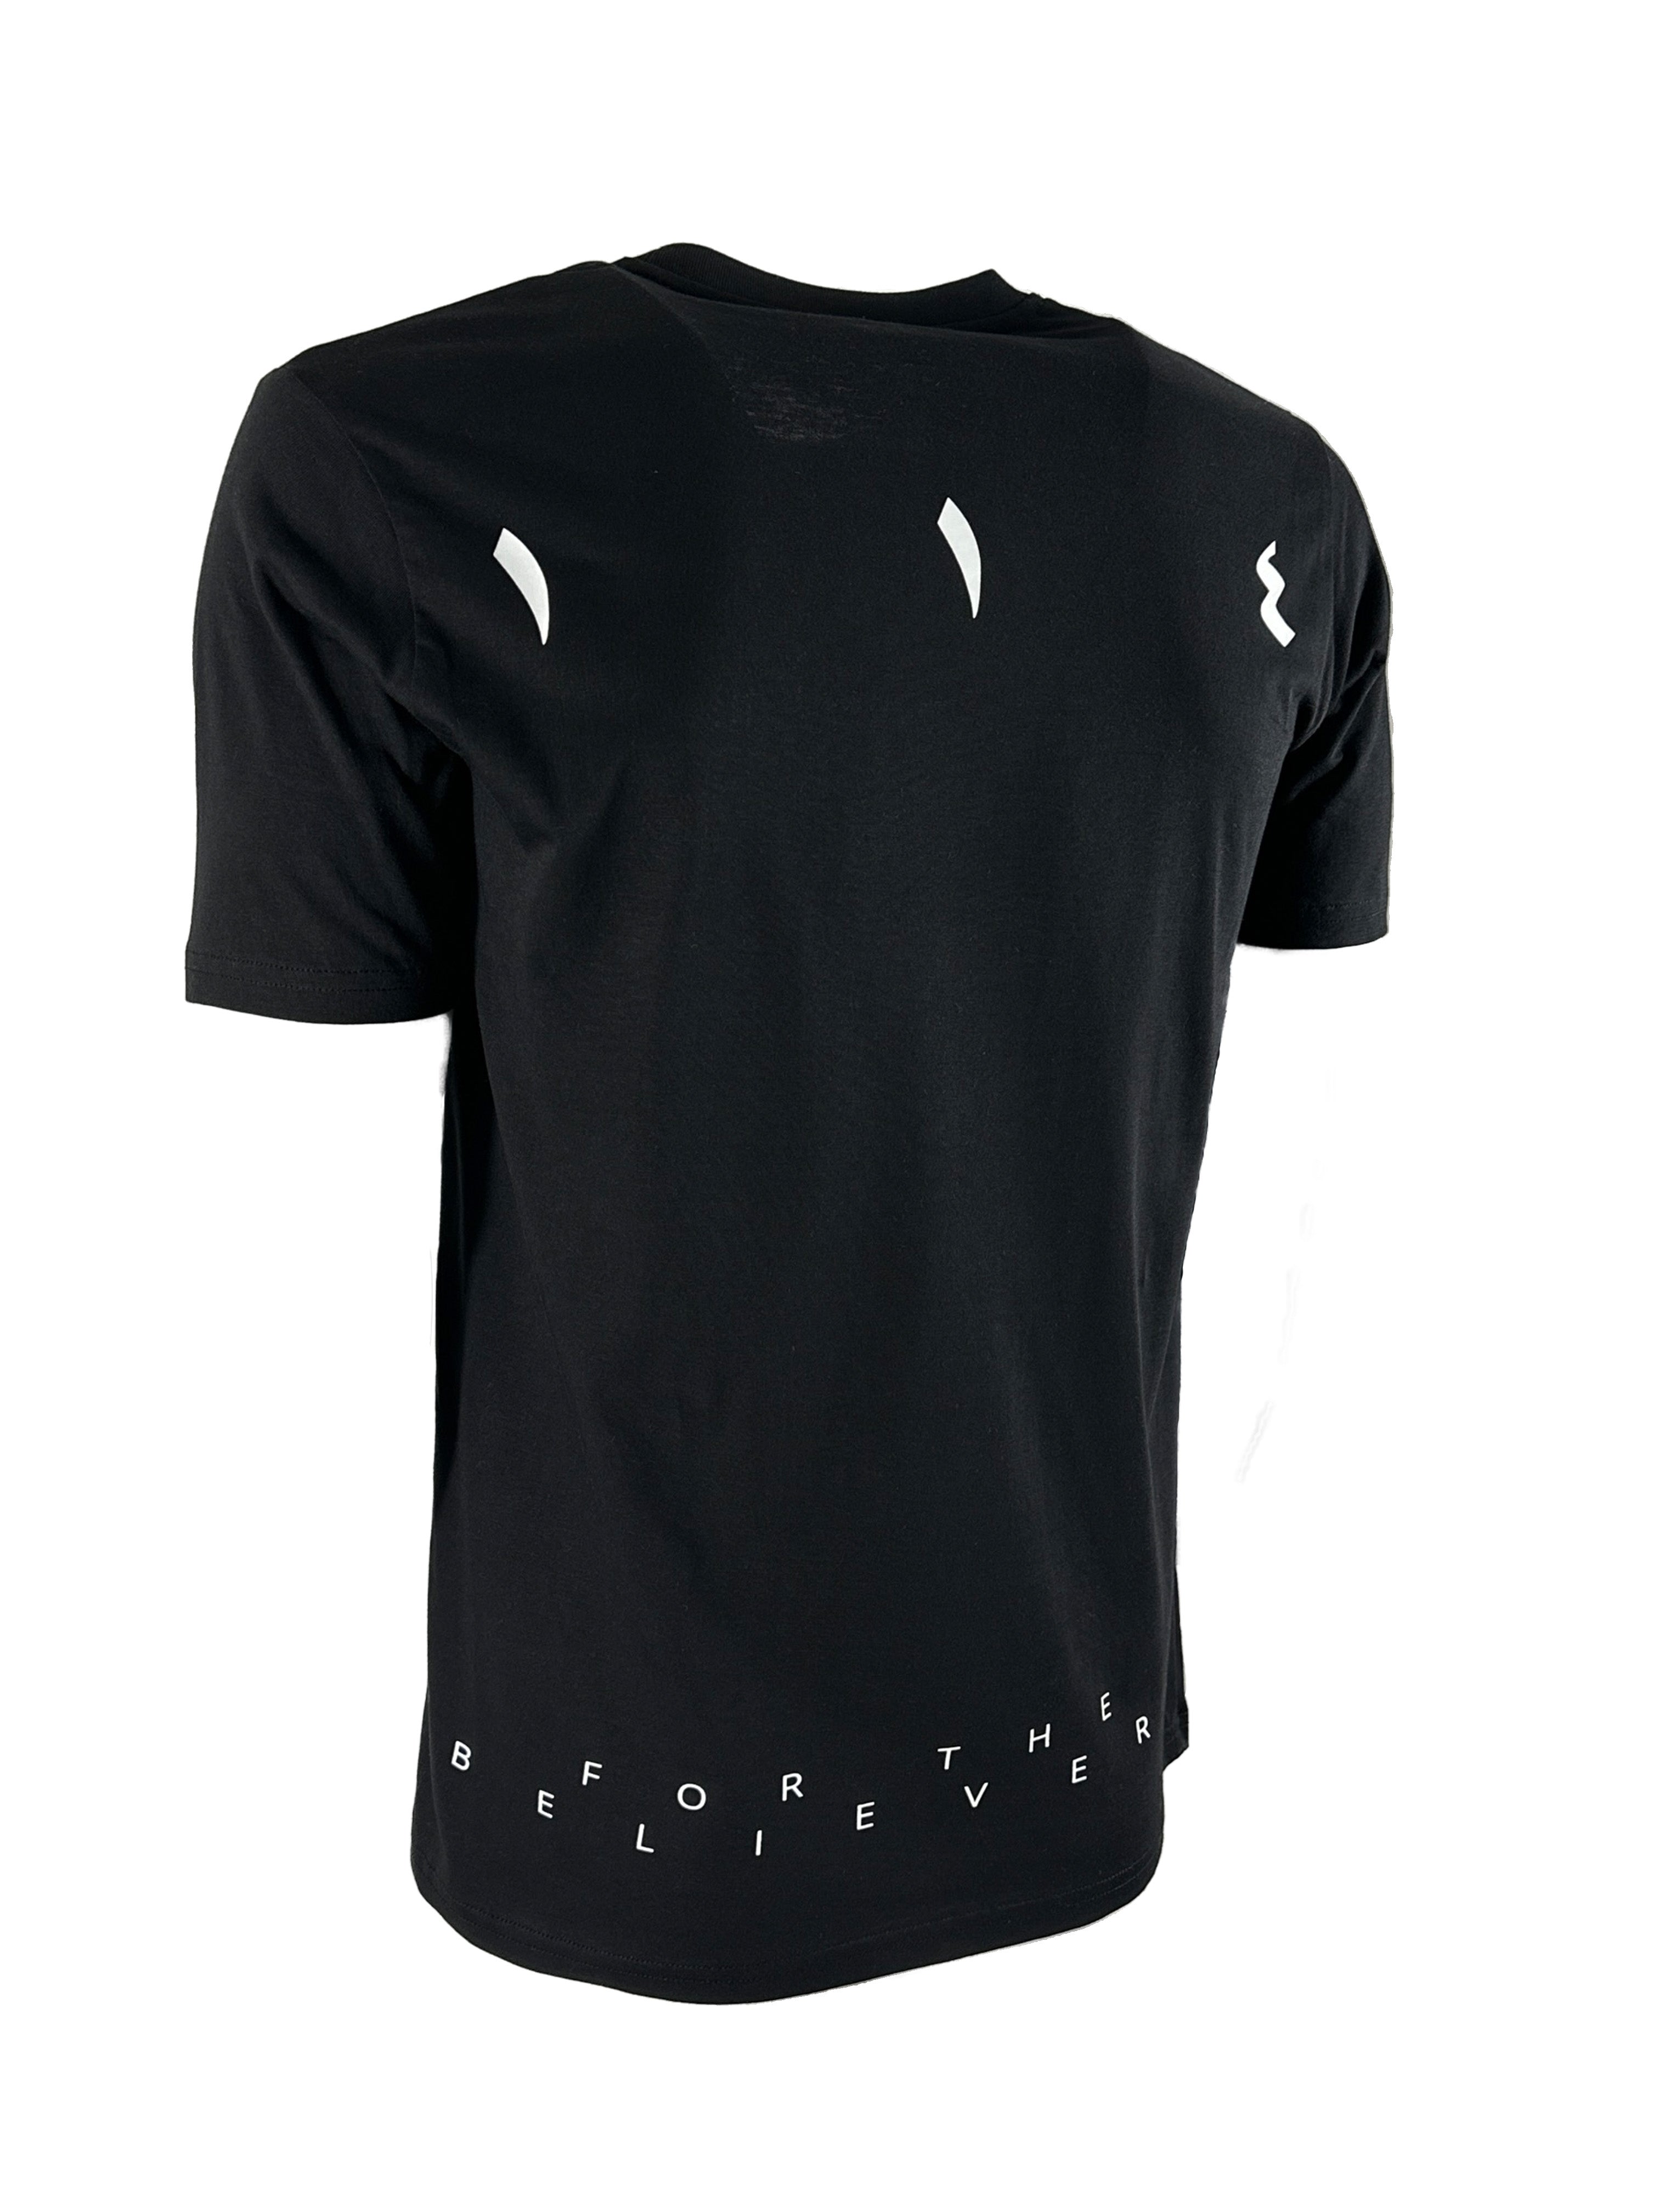 Berlin black men's T-shirt - One fourteen apparel